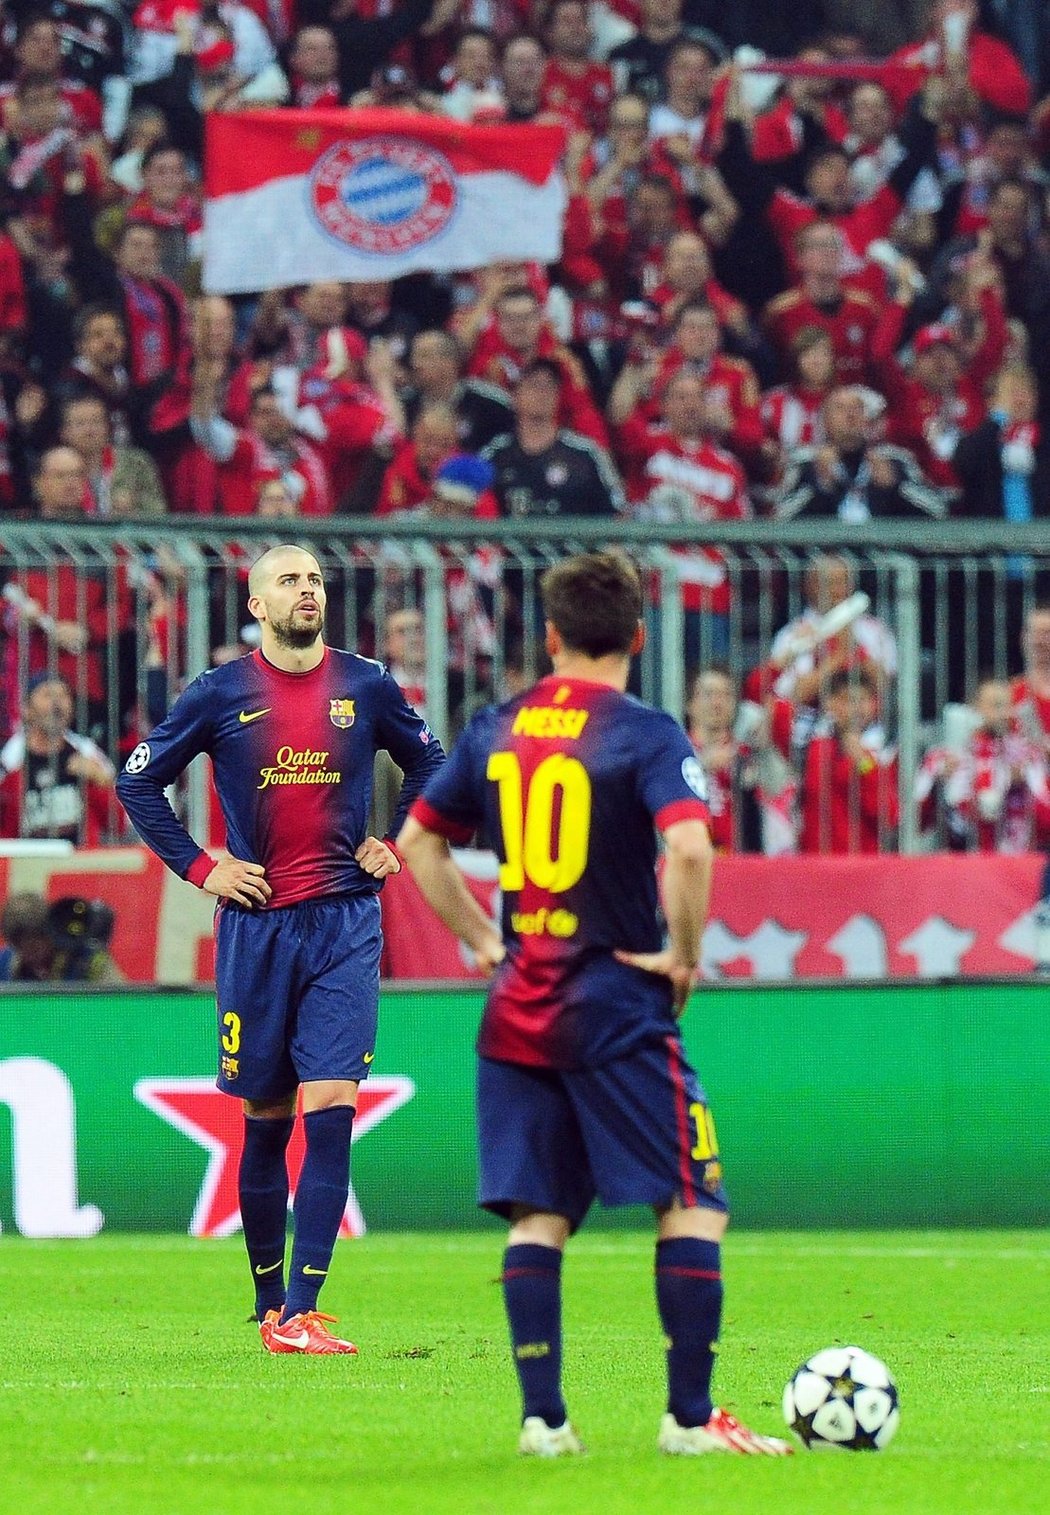 Obránce Barcelony Gerard Piqué zklamaně kráčí po mnichovském trávníku. Barca prohrála v úvodním semifinále Ligy mistrů s Bayernem 0:4